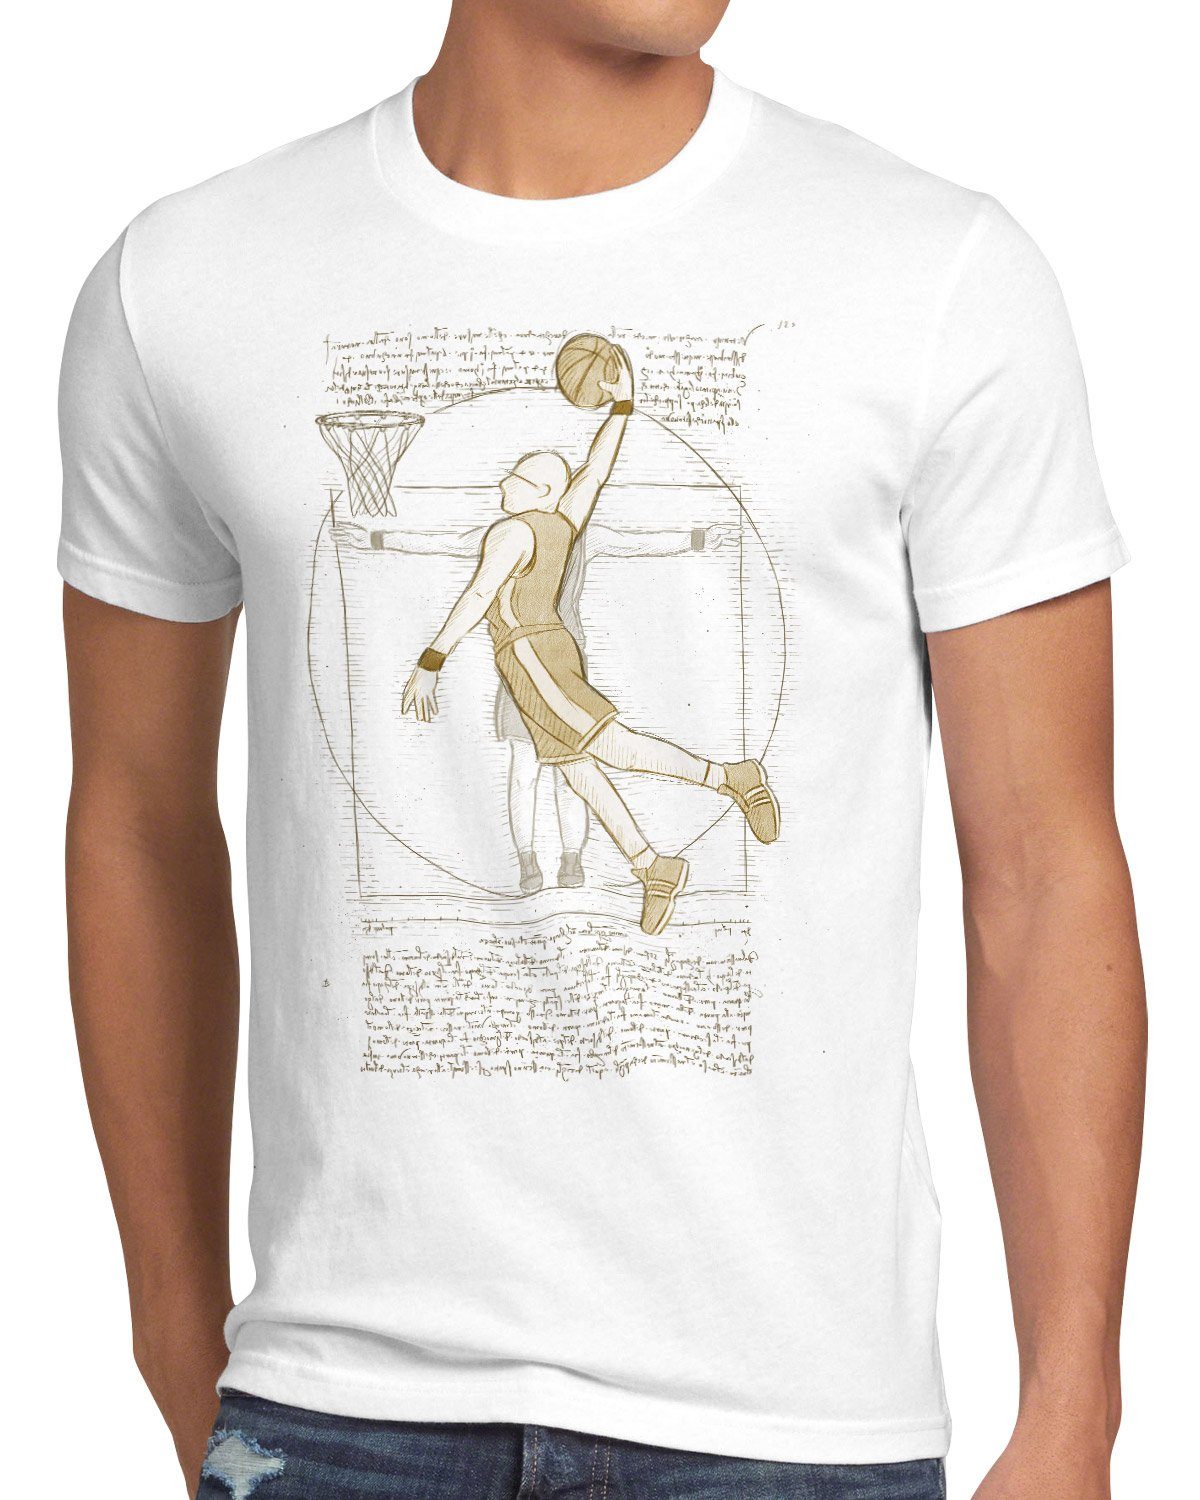 style3 Print-Shirt Herren Vitruvianischer weiß vinci Basketballspieler ballsport da mensch T-Shirt